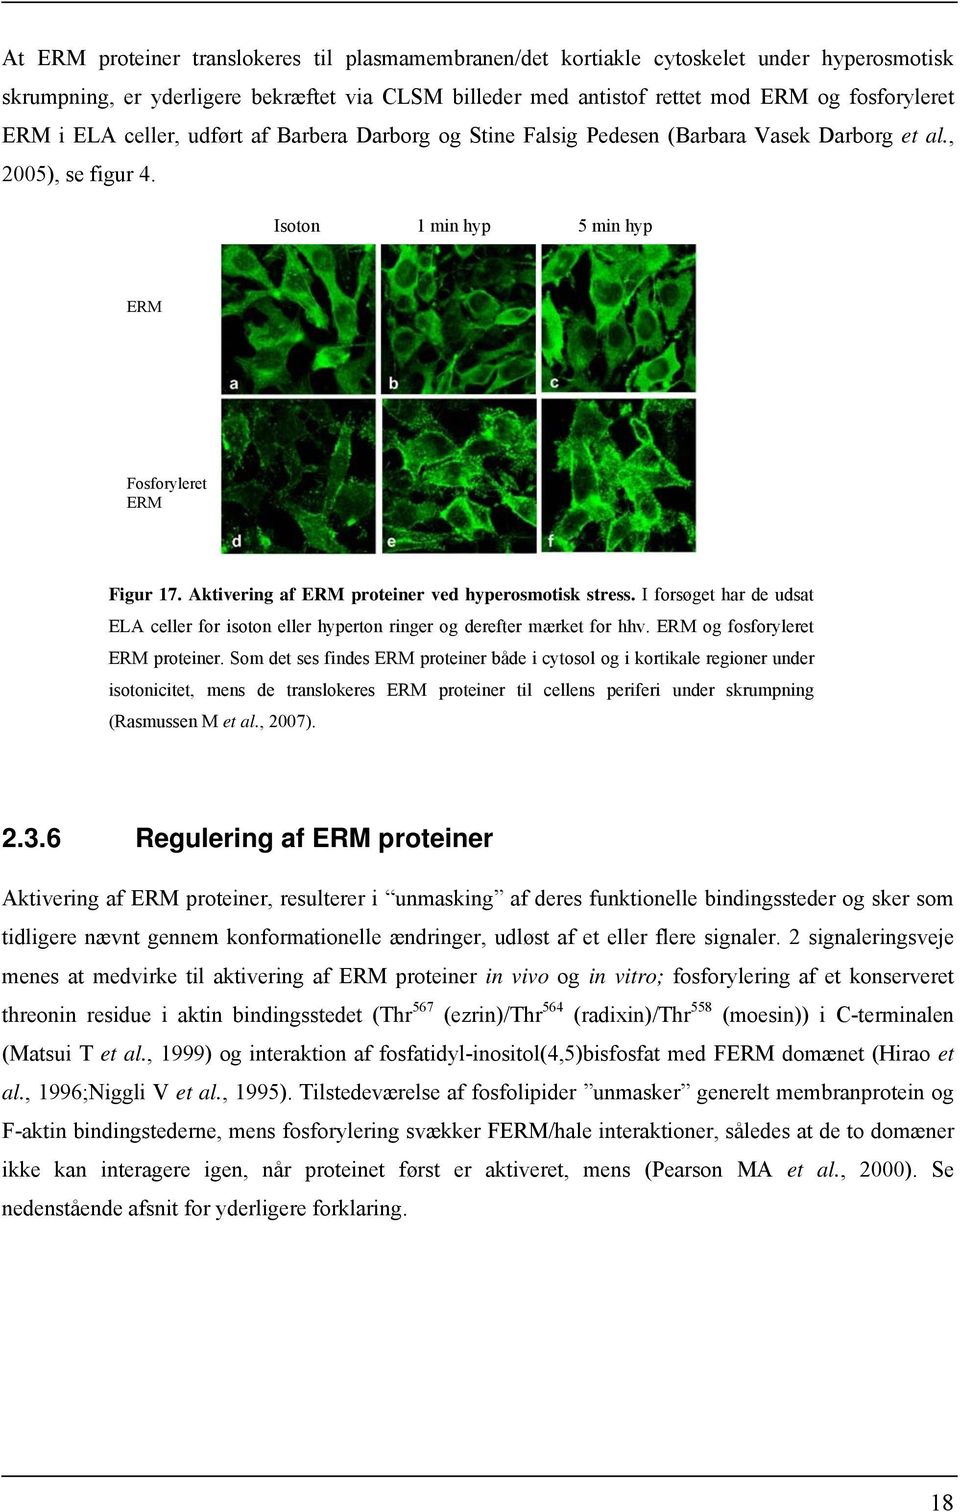 Aktivering af ERM proteiner ved hyperosmotisk stress. I forsøget har de udsat ELA celler for isoton eller hyperton ringer og derefter mærket for hhv. ERM og fosforyleret ERM proteiner.